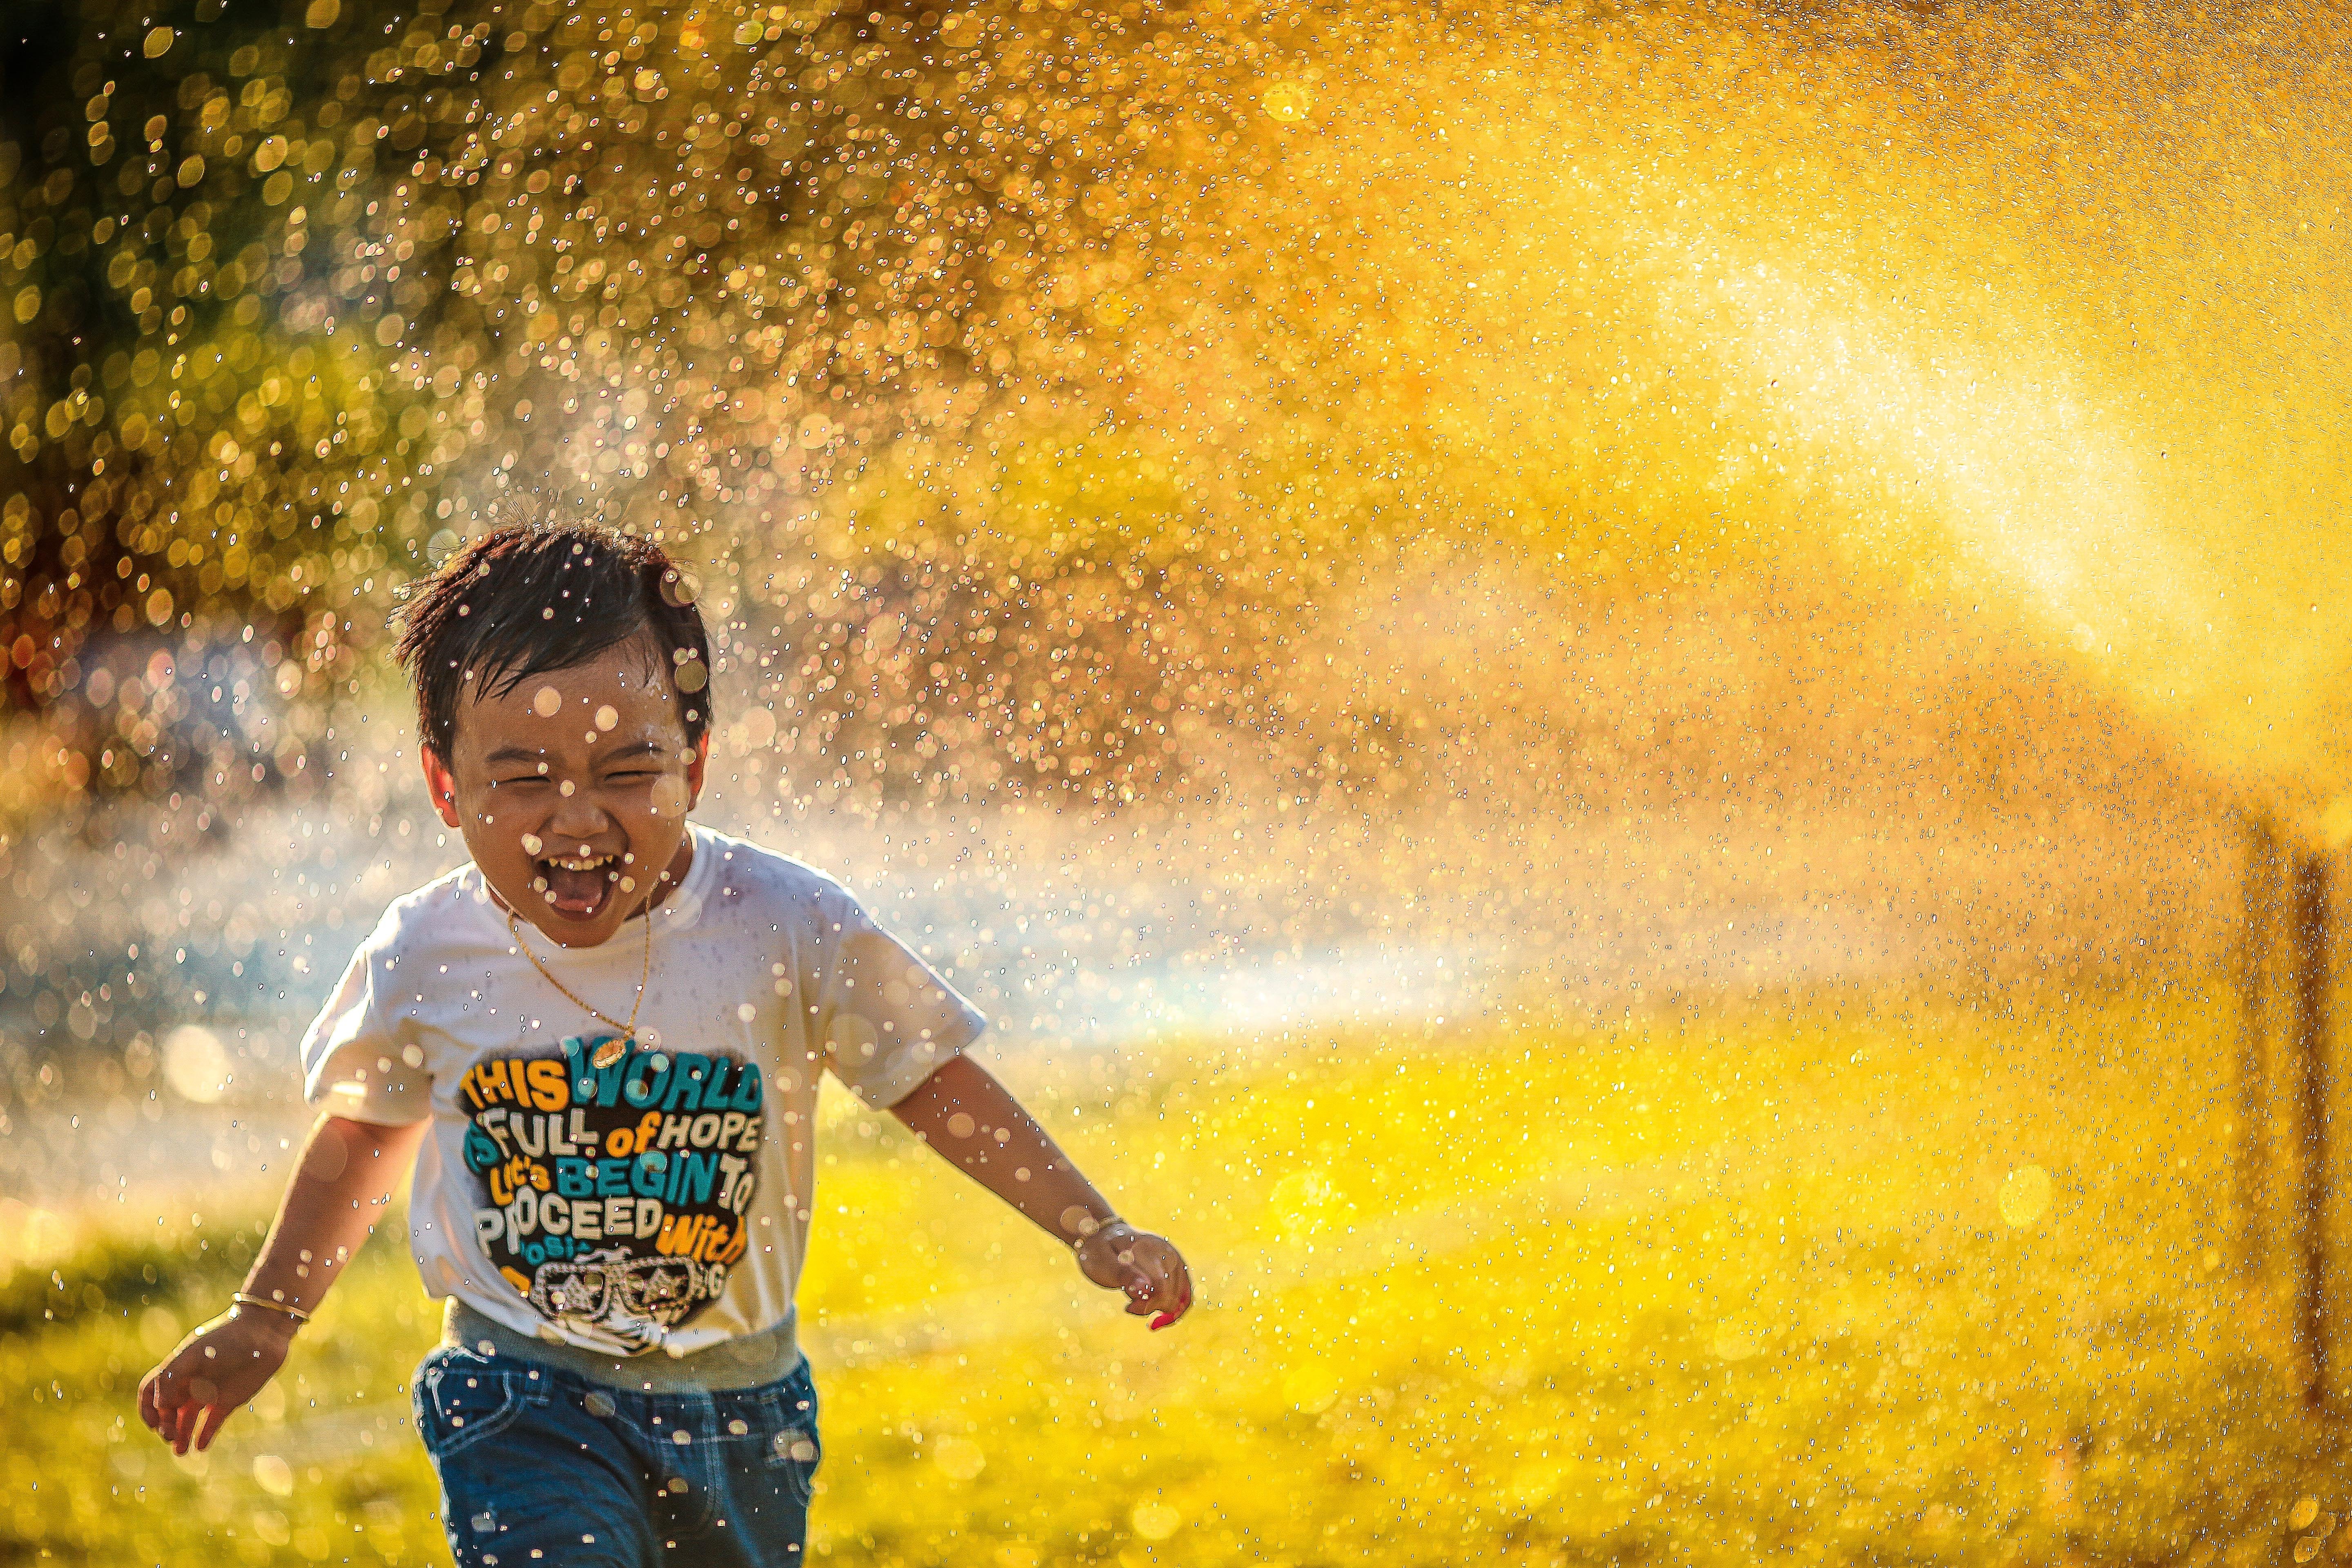 A young boy runs through a sprinkler.